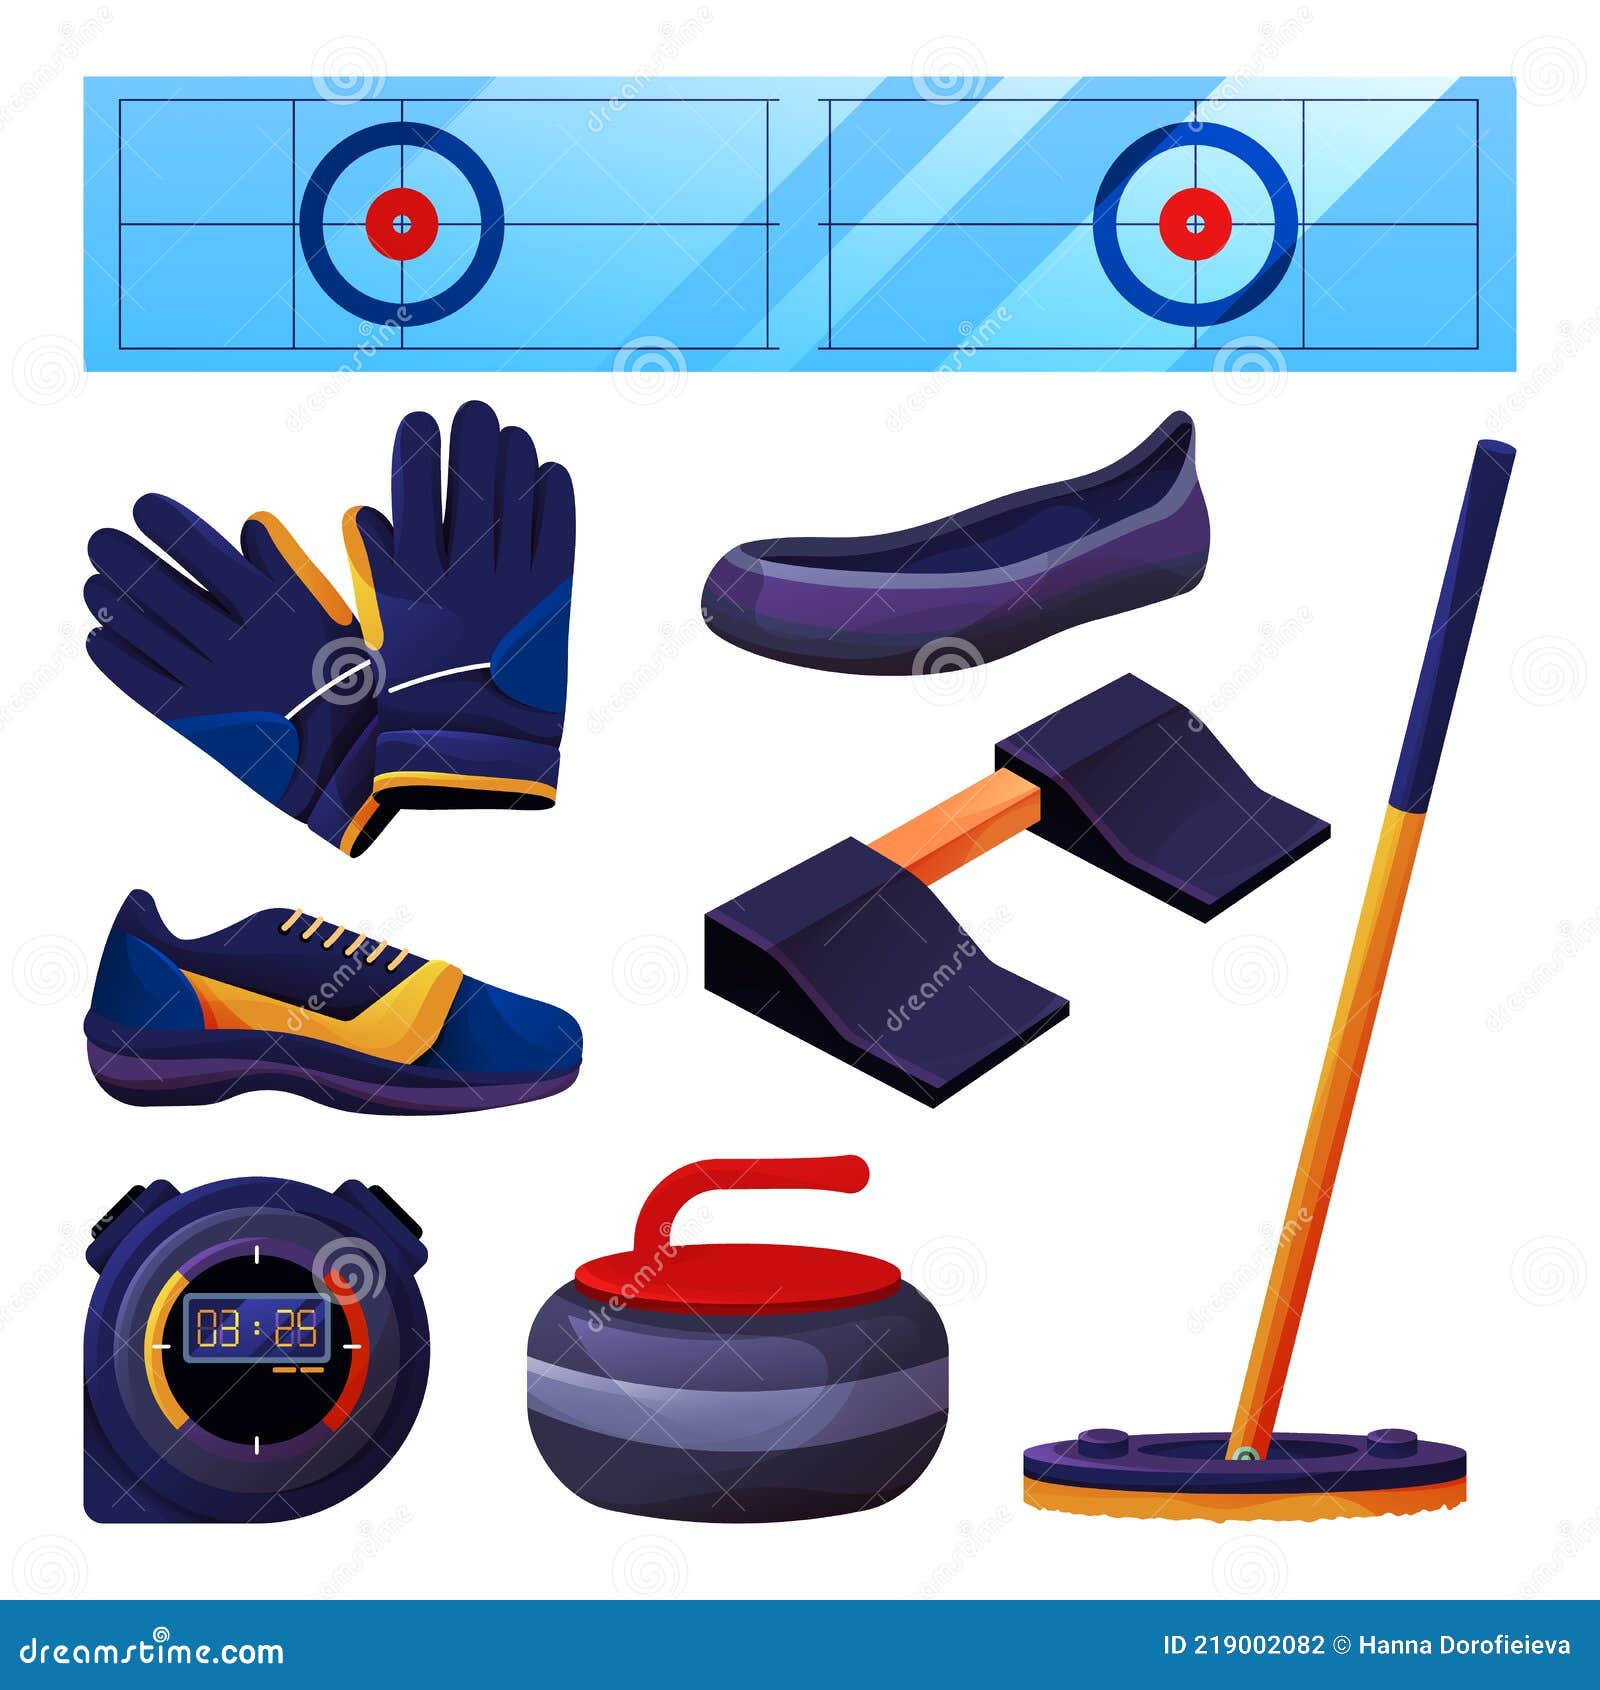 https://thumbs.dreamstime.com/z/juego-de-material-rizado-y-accesorios-deportivos-equipo-curling-iconos-vectoriales-campo-hielo-o-hoja-piedra-granito-escoba-roca-219002082.jpg